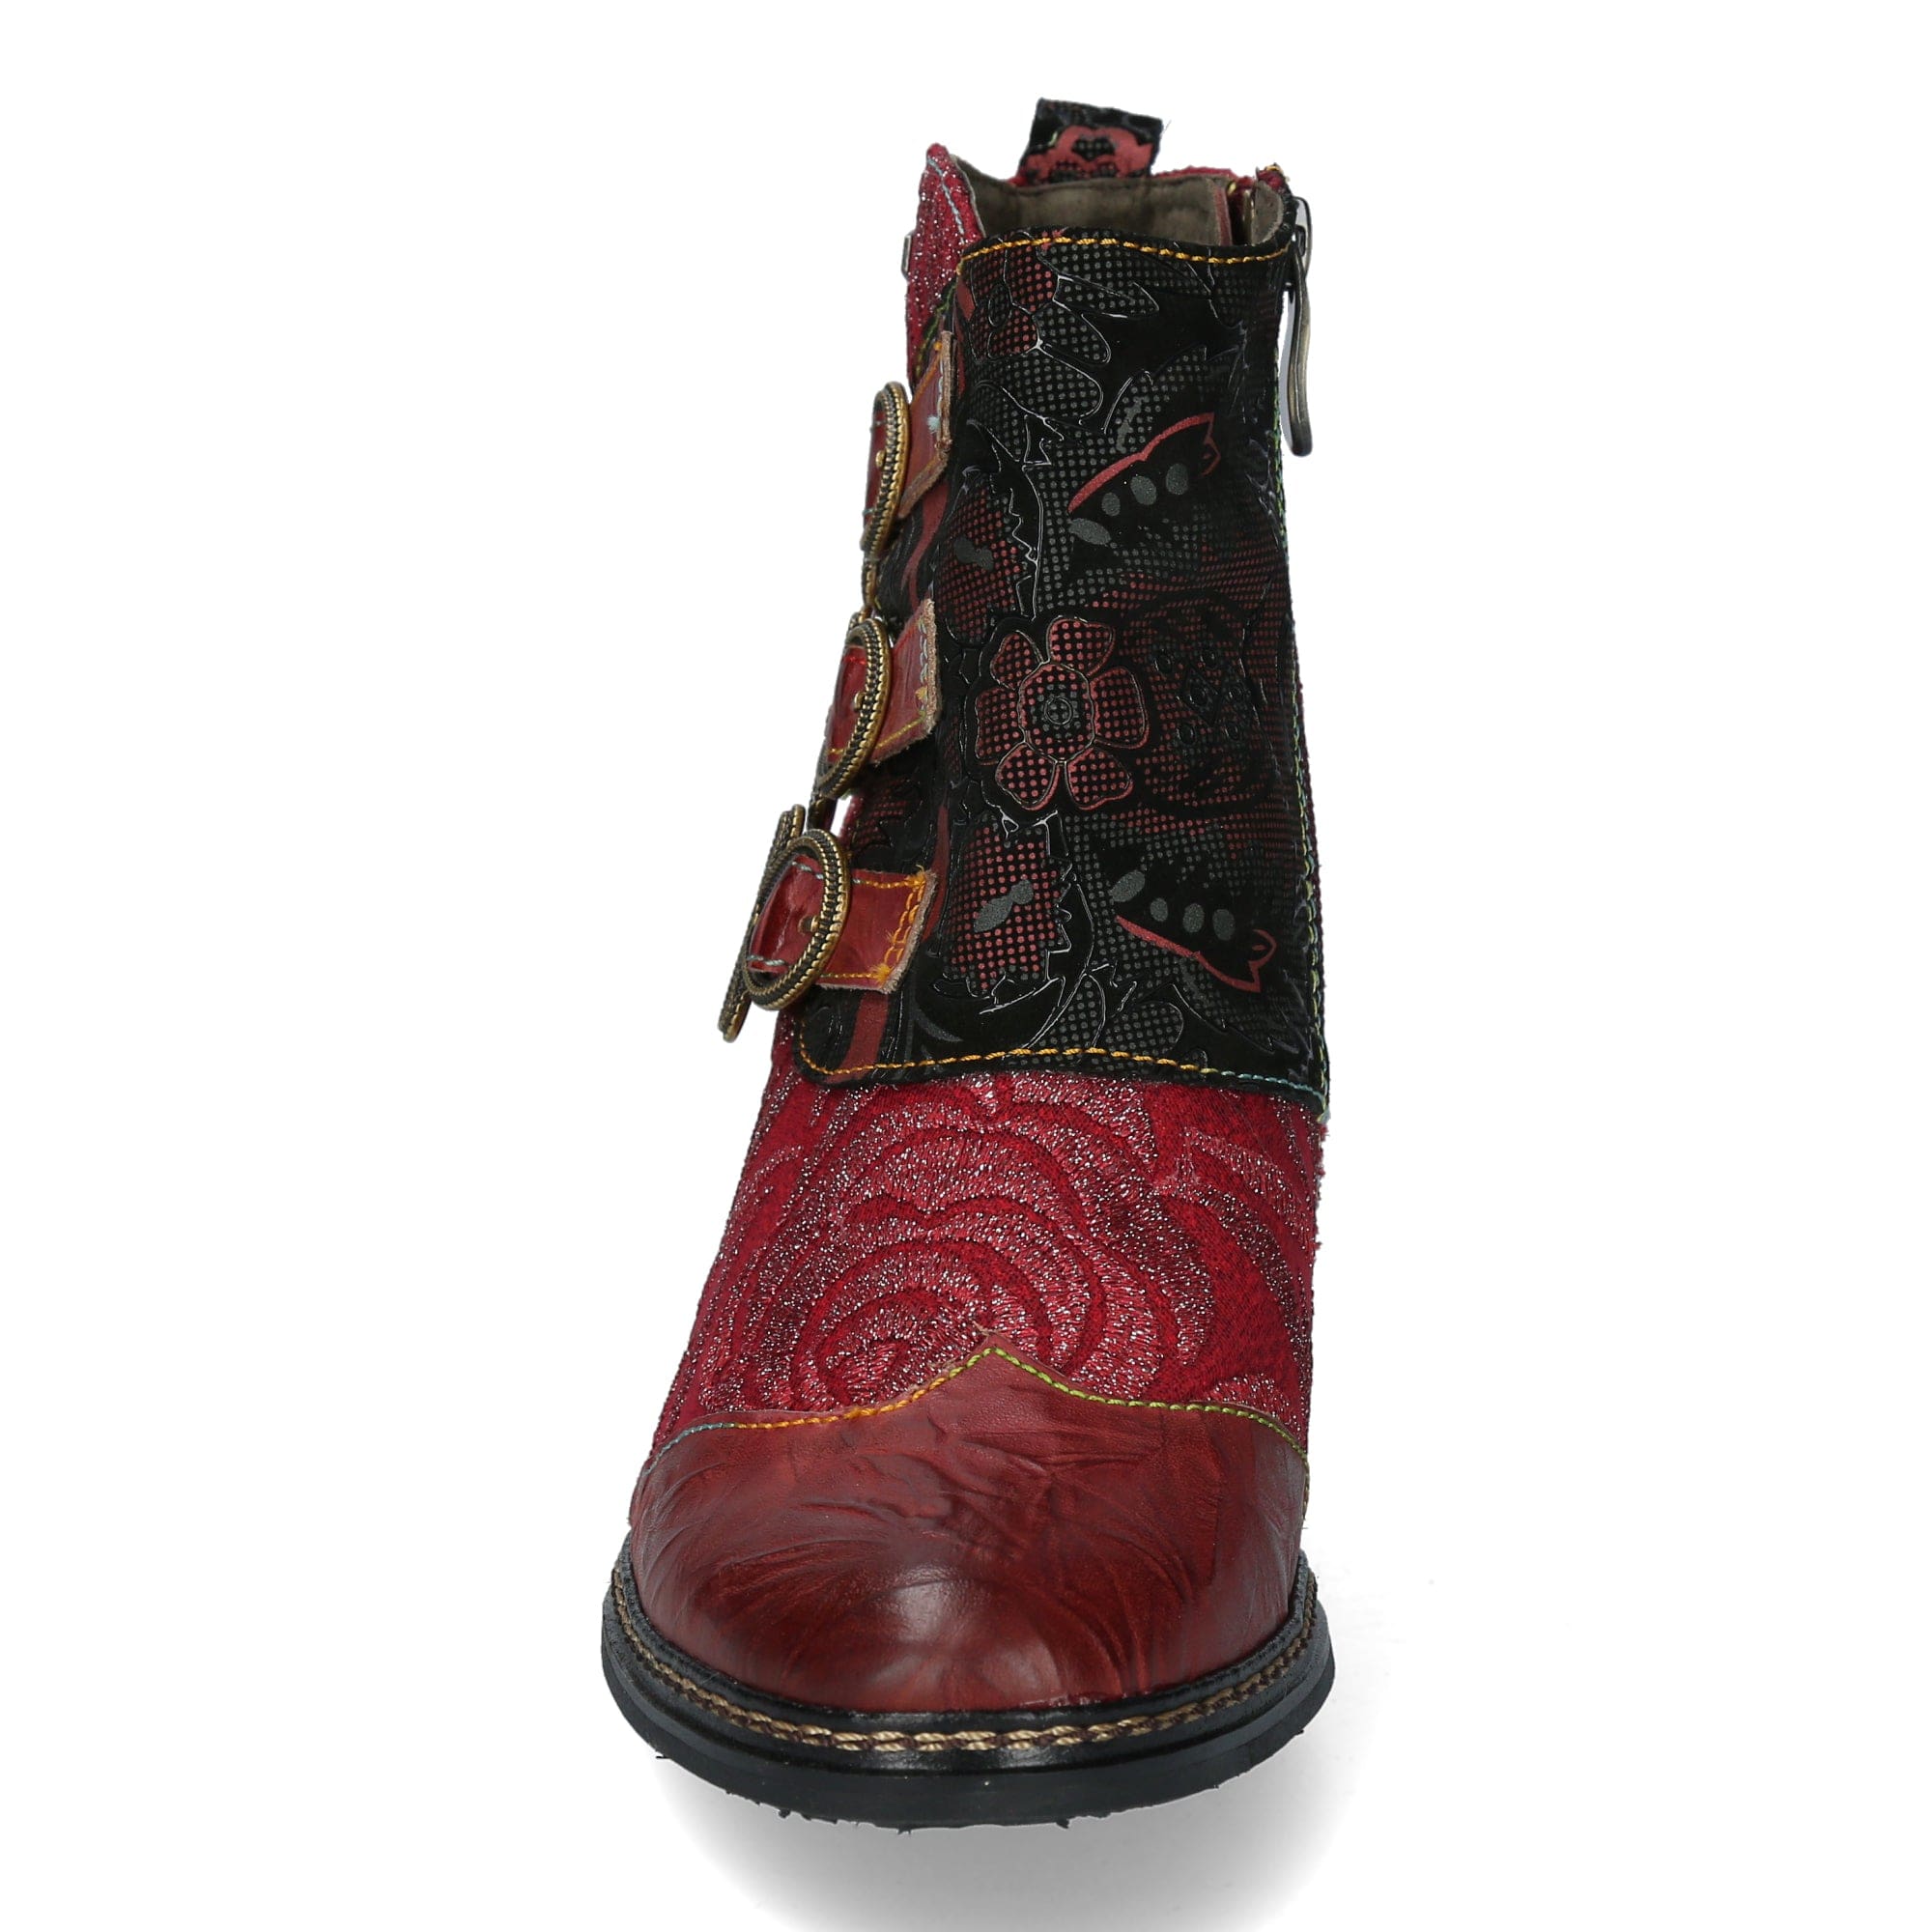 Shoe EMELINE 03 Arty - Boots